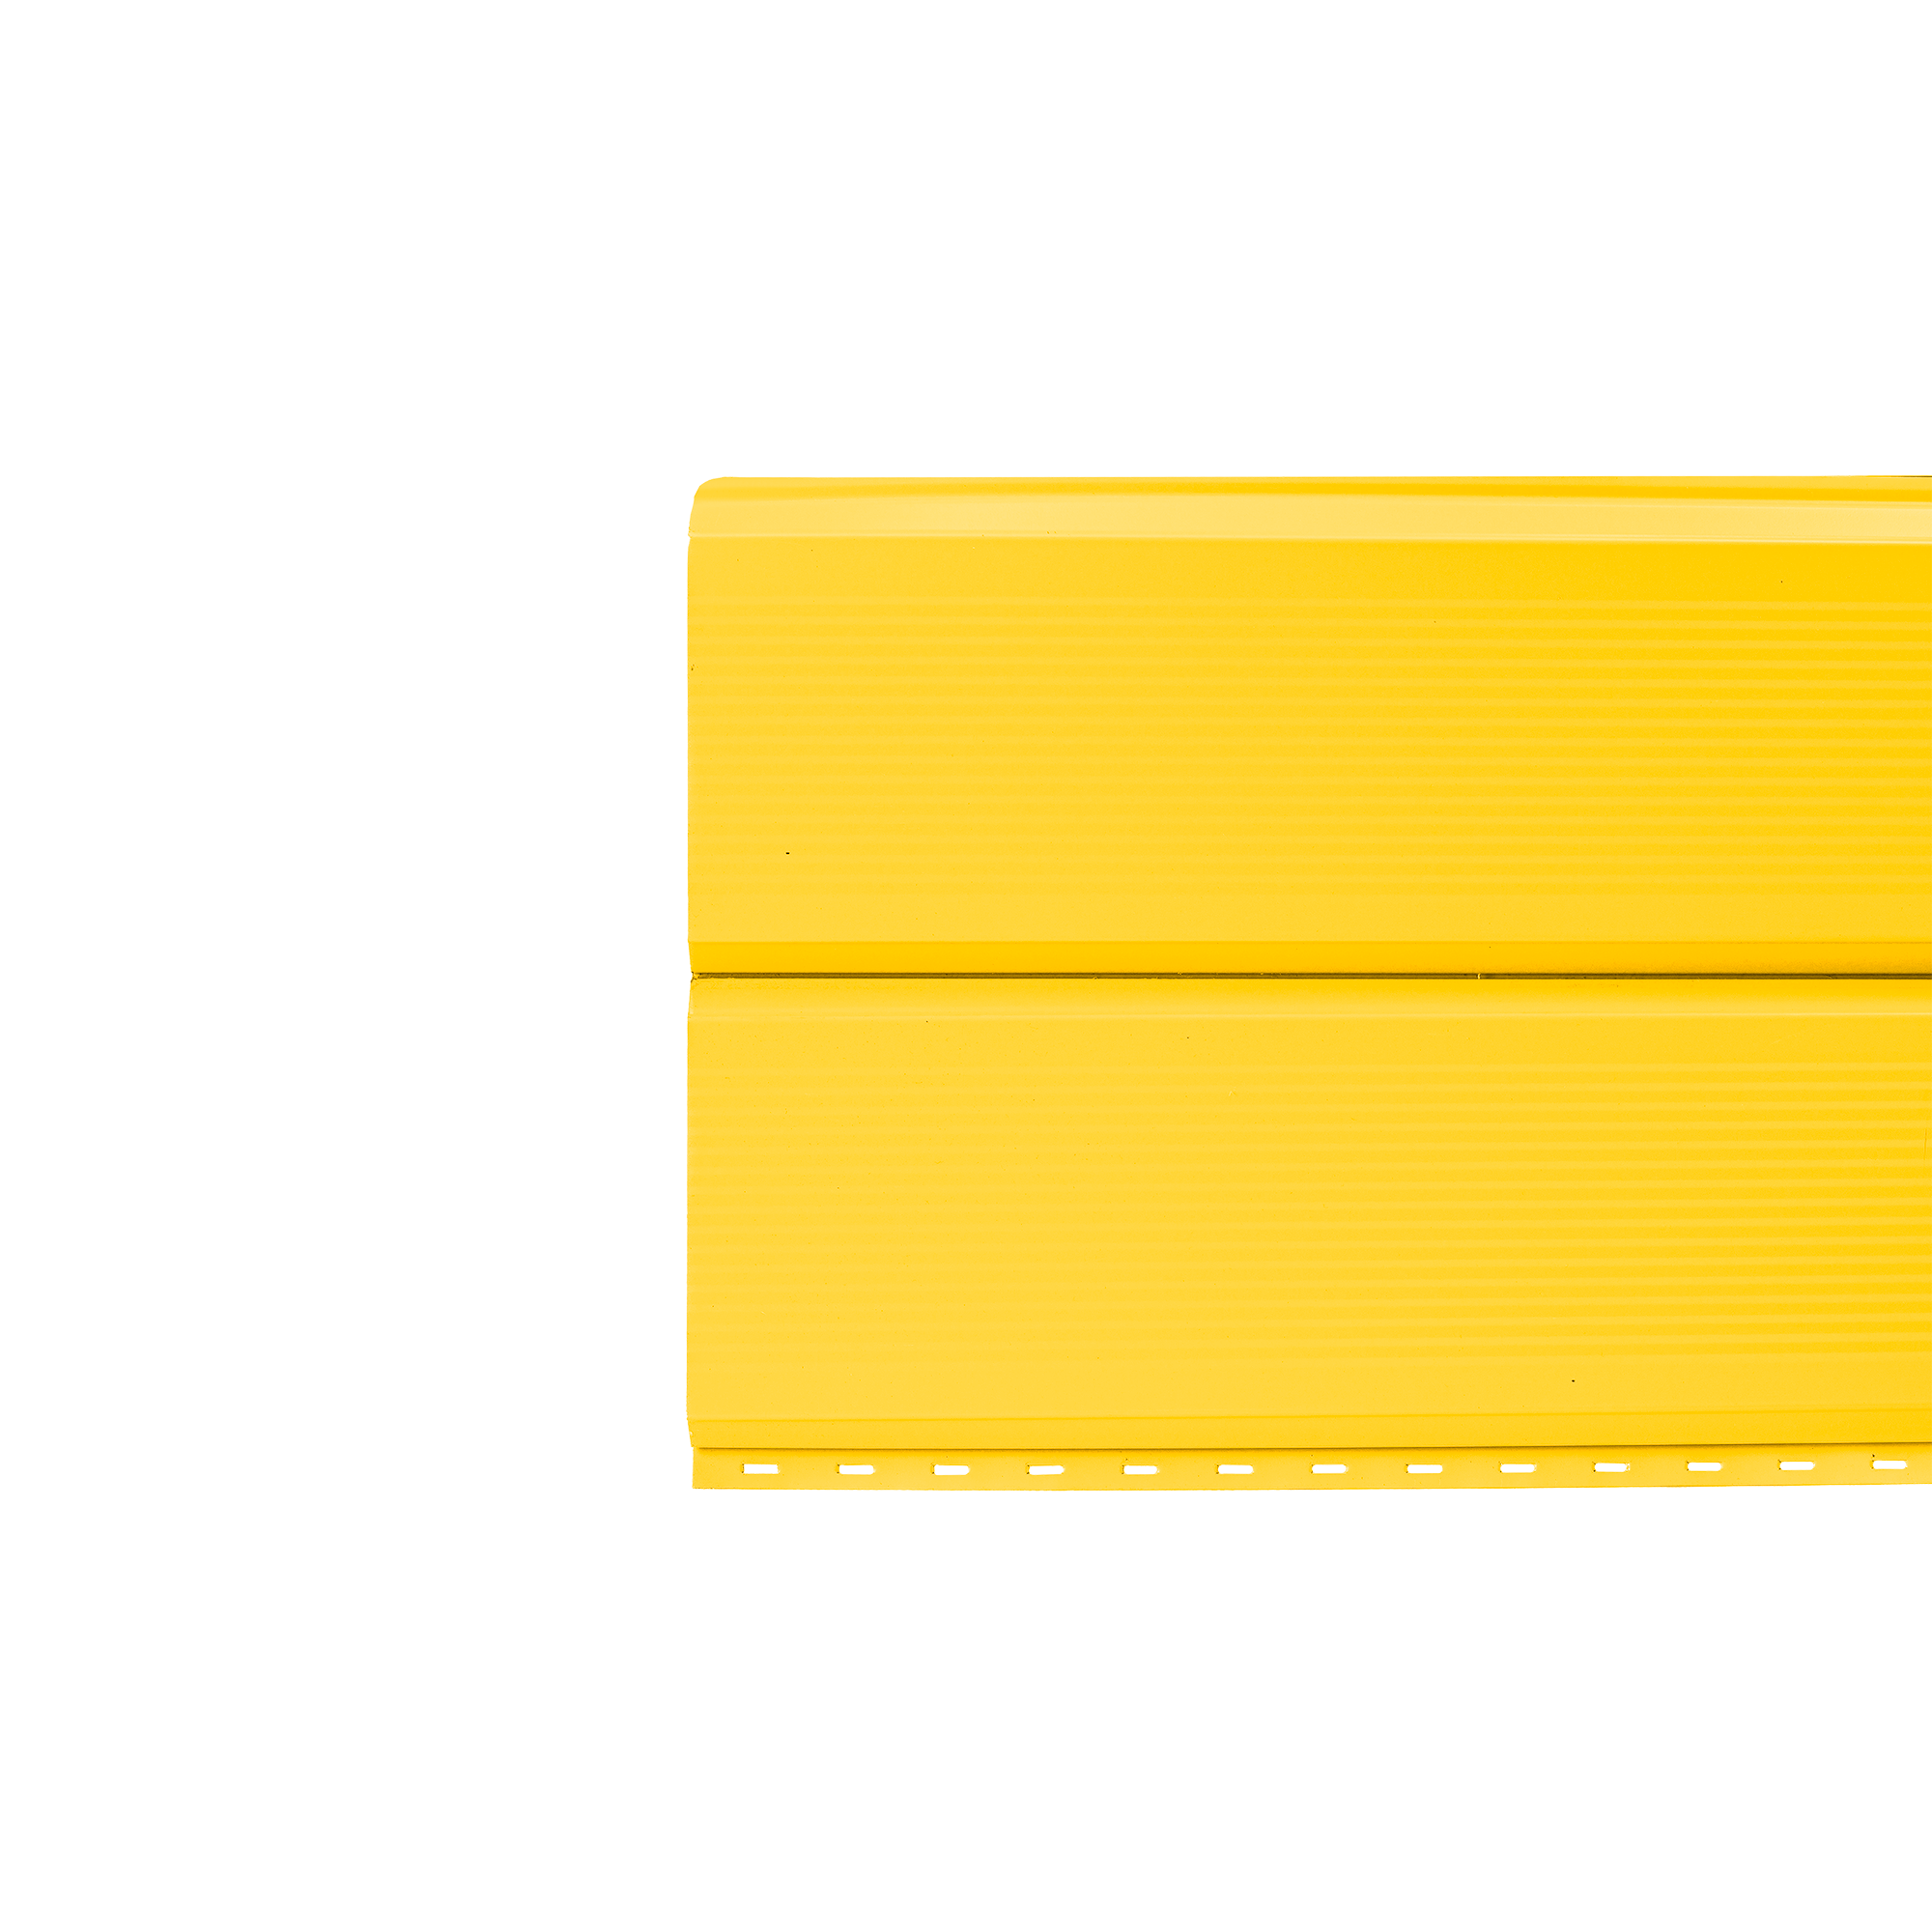 Брусnika гофрированный Желтый цинковый 0,45 мм Полиэстер Сайдинг Кровля Сервис